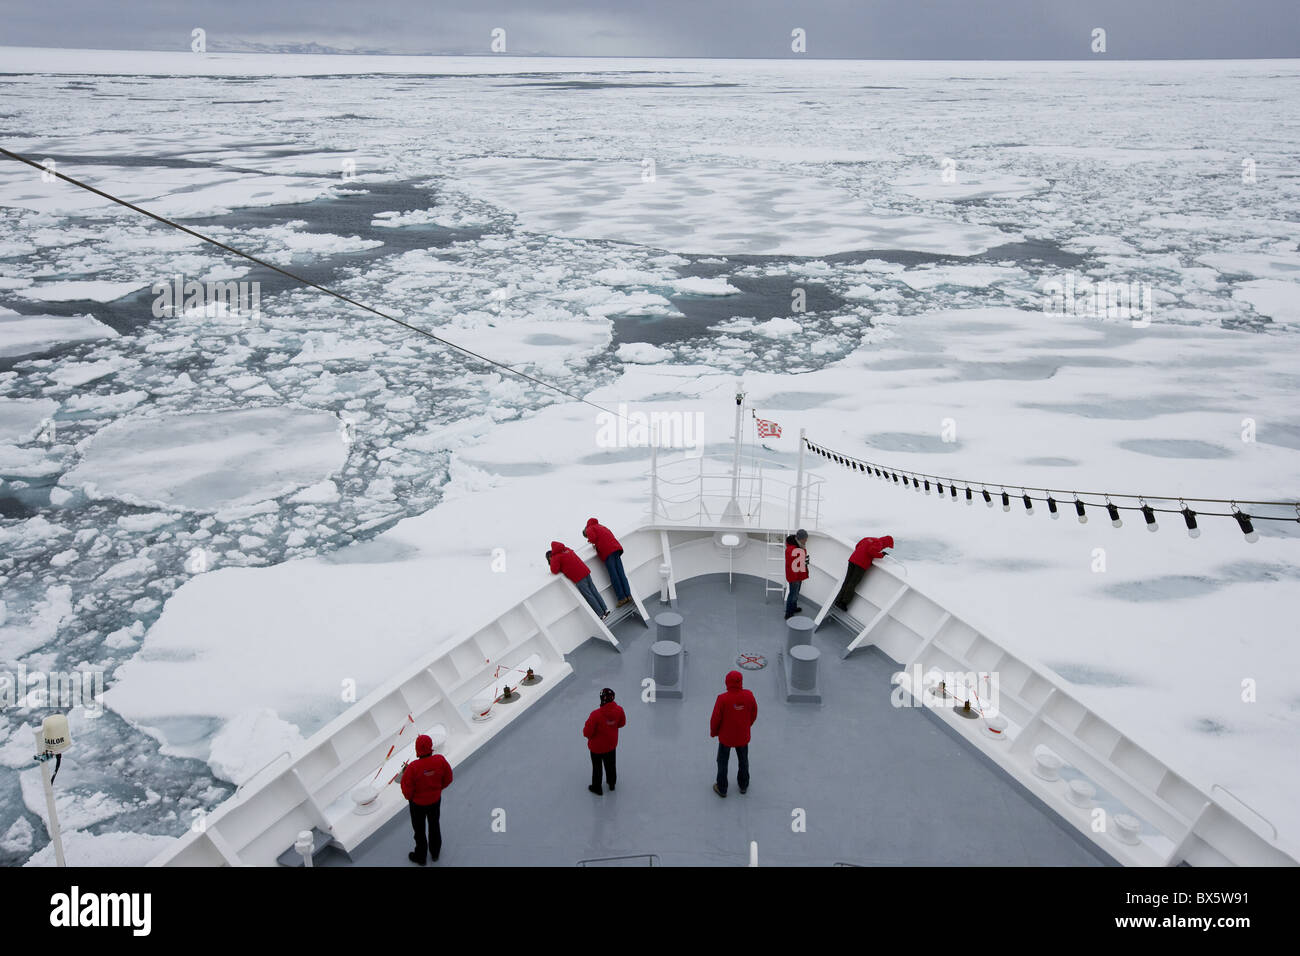 La démolition des navires à travers la banquise et les glaces à la dérive, le Groenland, l'Arctique, les régions polaires Banque D'Images